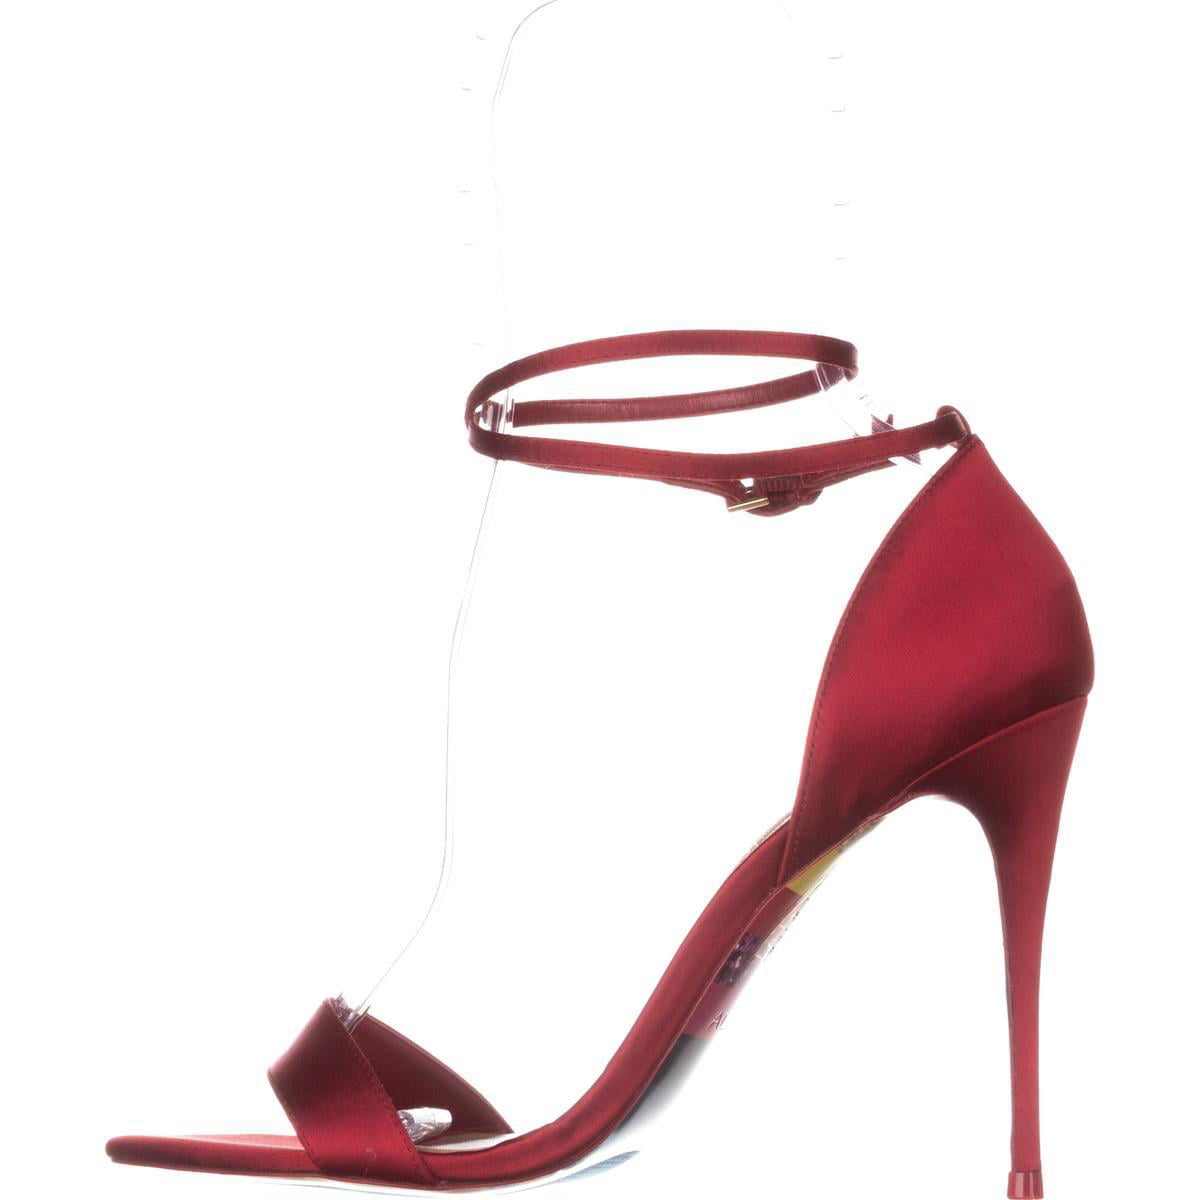 red aldo sandals